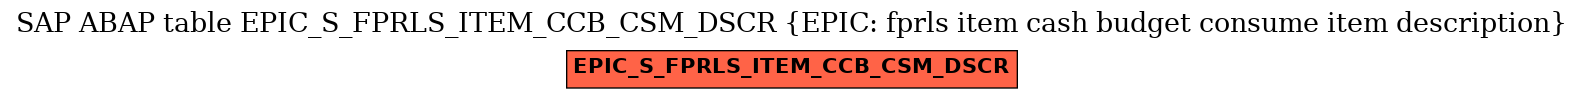 E-R Diagram for table EPIC_S_FPRLS_ITEM_CCB_CSM_DSCR (EPIC: fprls item cash budget consume item description)